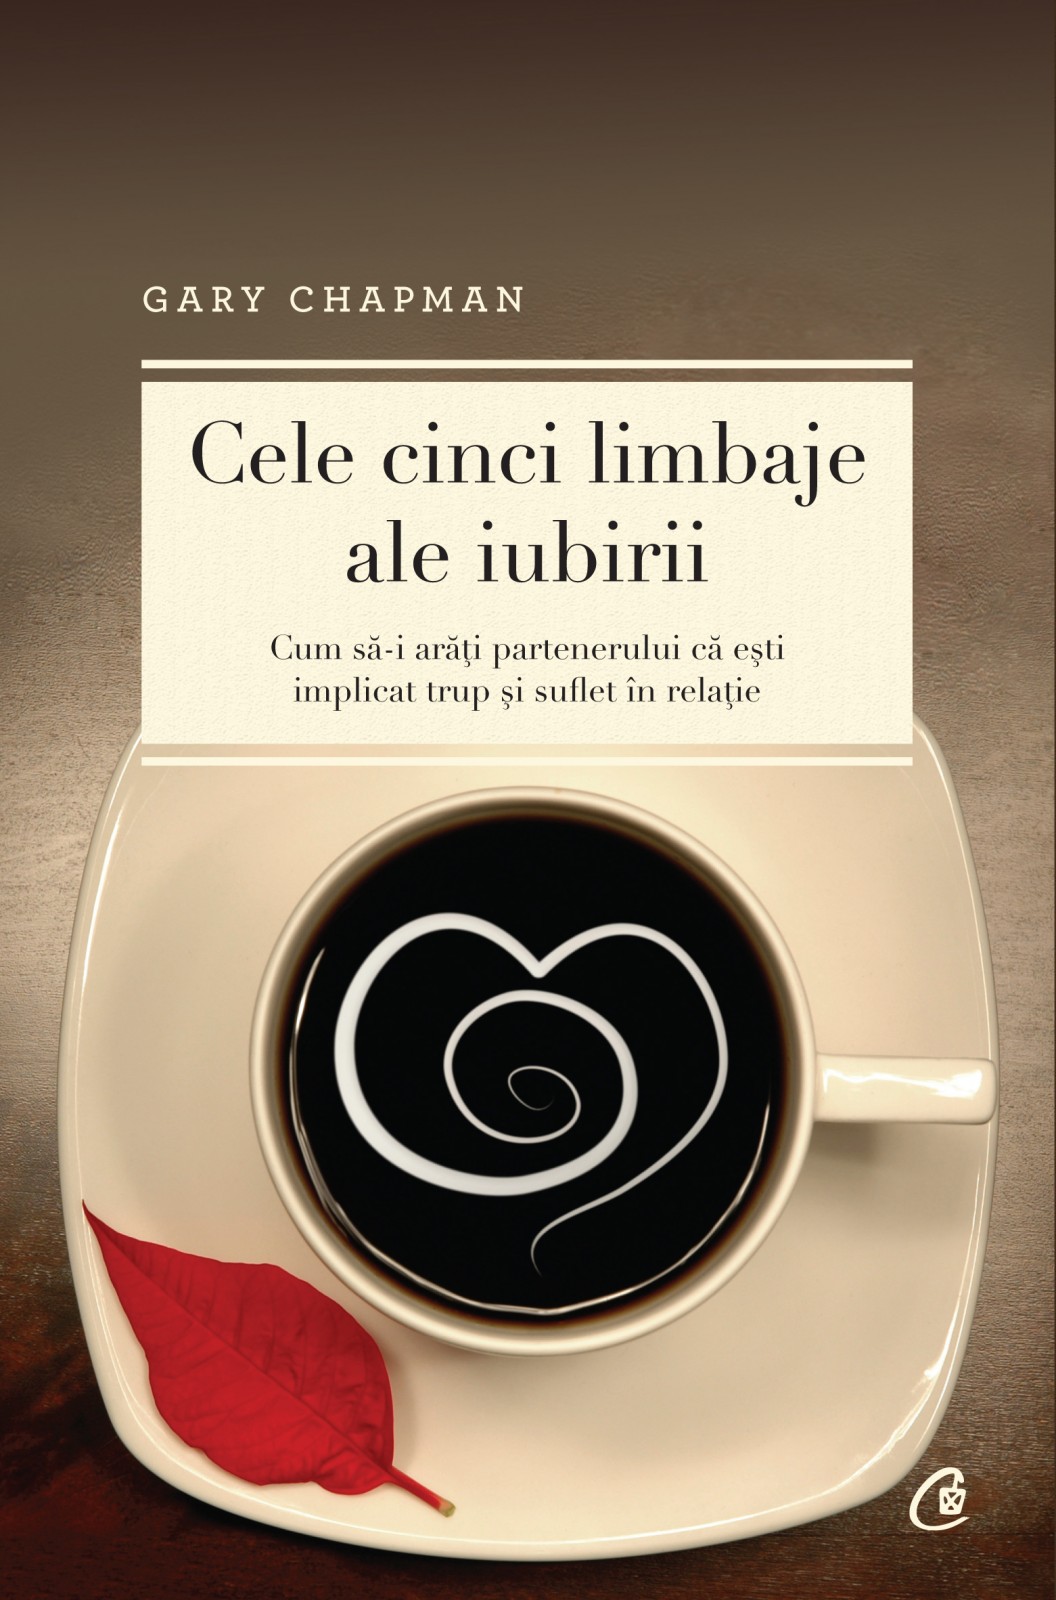 Curs “Cele cinci limbaje ale iubirii” bazat pe celebra carte scrisă de Gary Chapman (25-29 iulie)